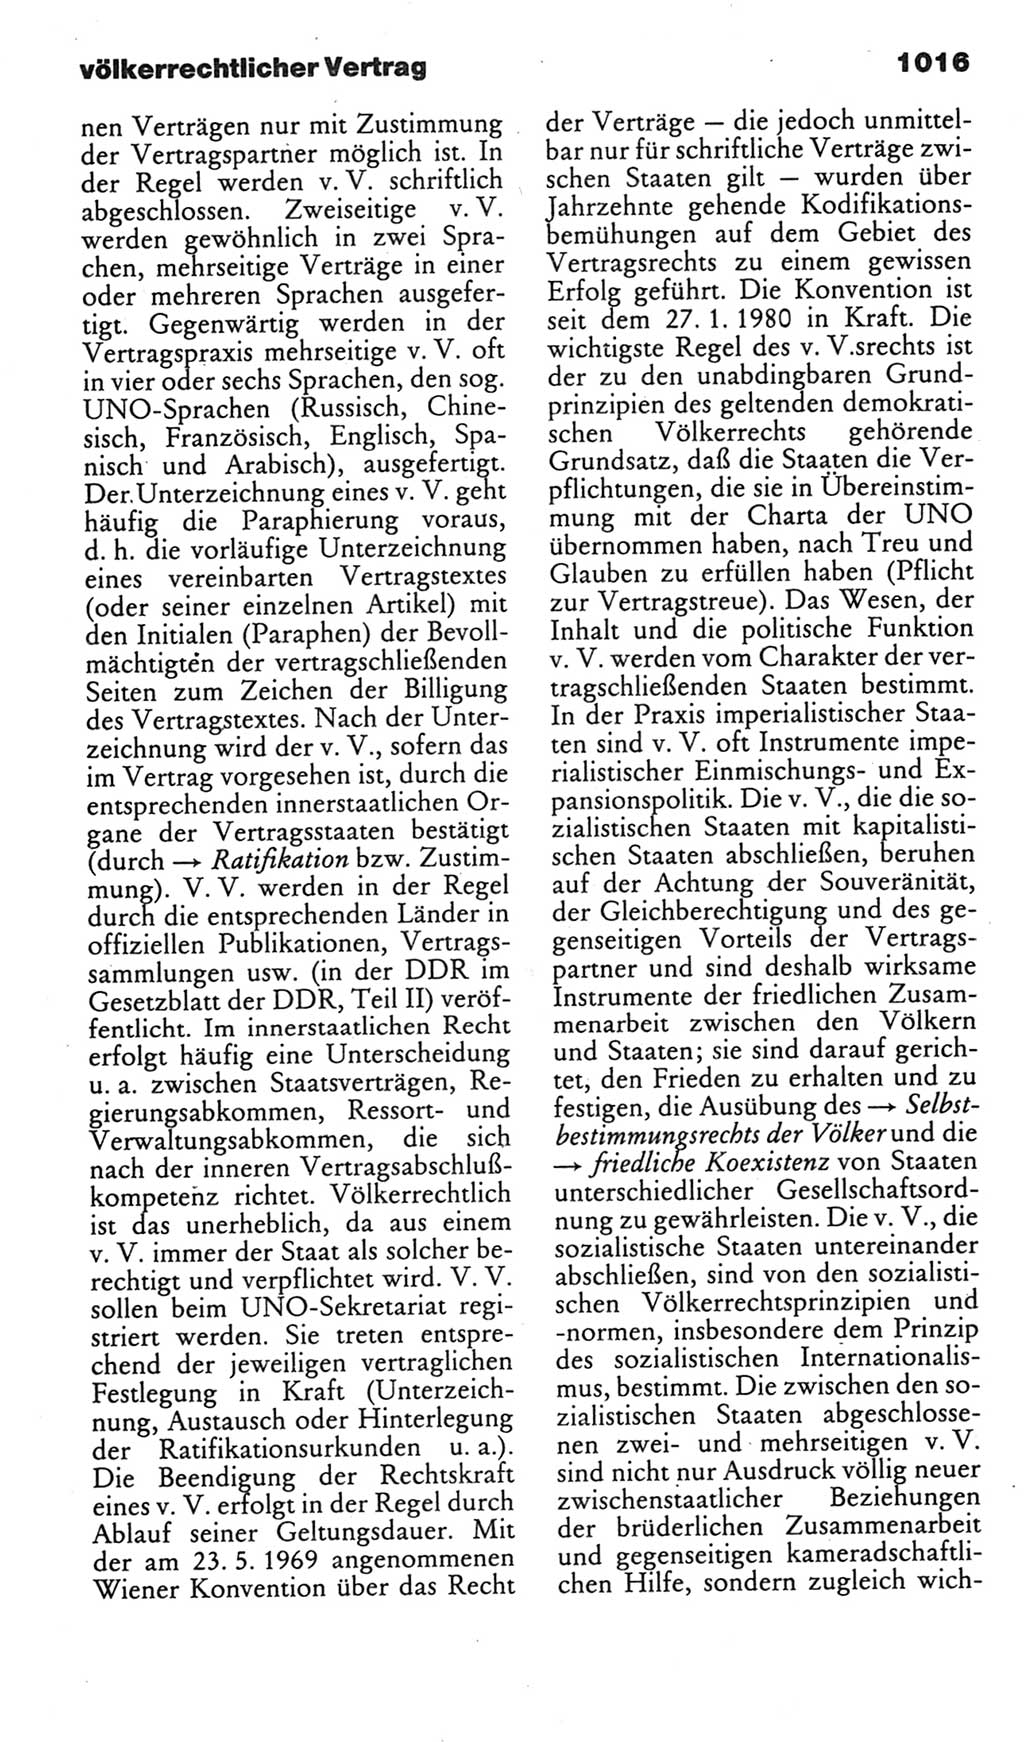 Kleines politisches Wörterbuch [Deutsche Demokratische Republik (DDR)] 1985, Seite 1016 (Kl. pol. Wb. DDR 1985, S. 1016)